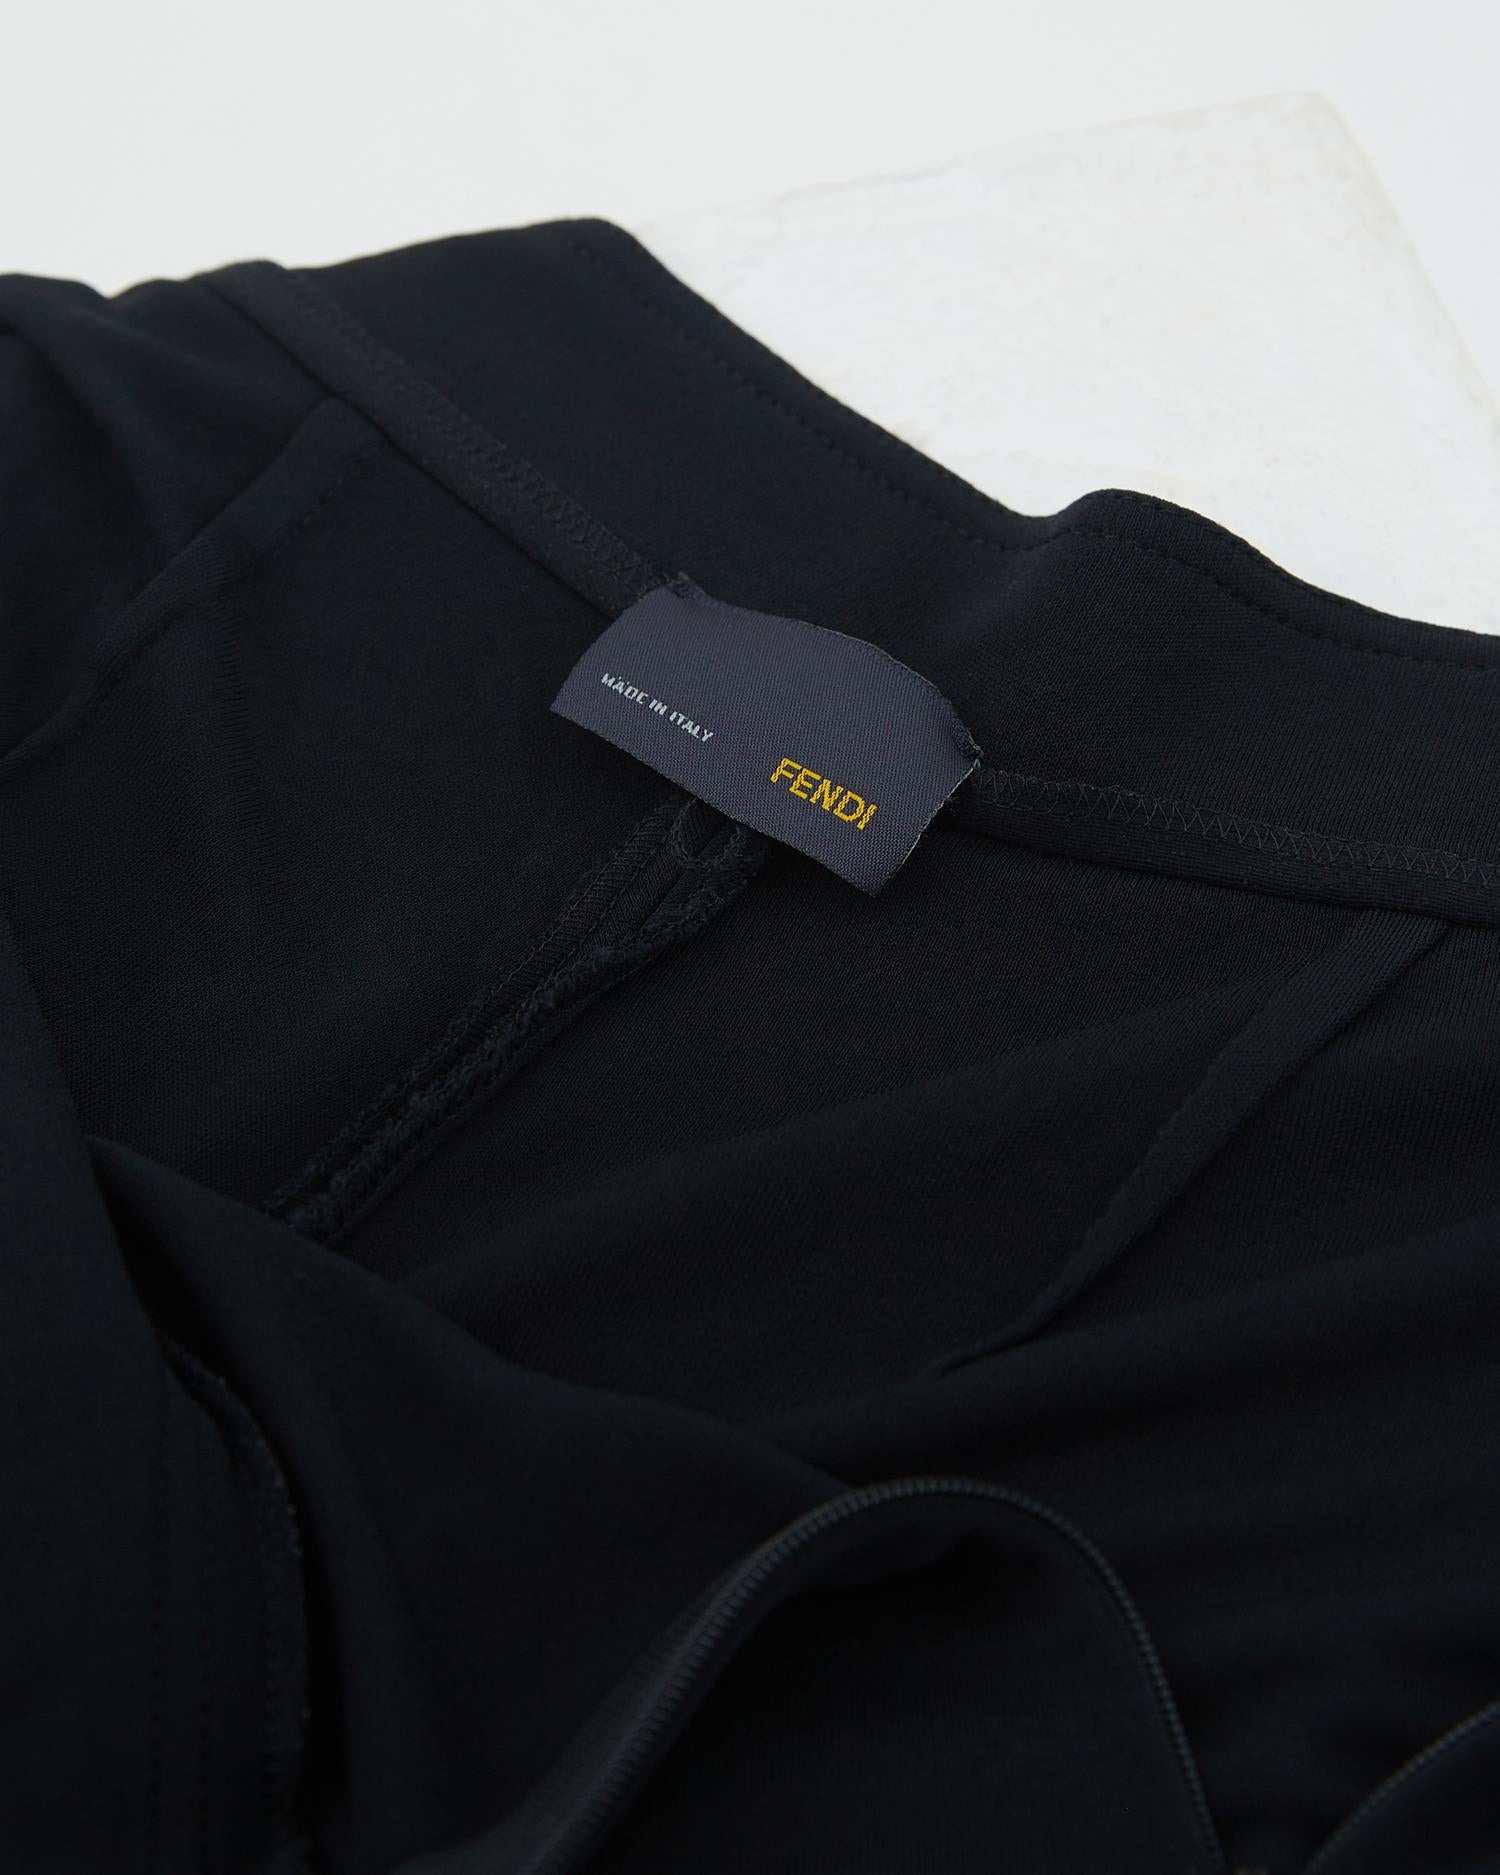 Fendi S/S 2007 Black lycra harem pants  For Sale 2